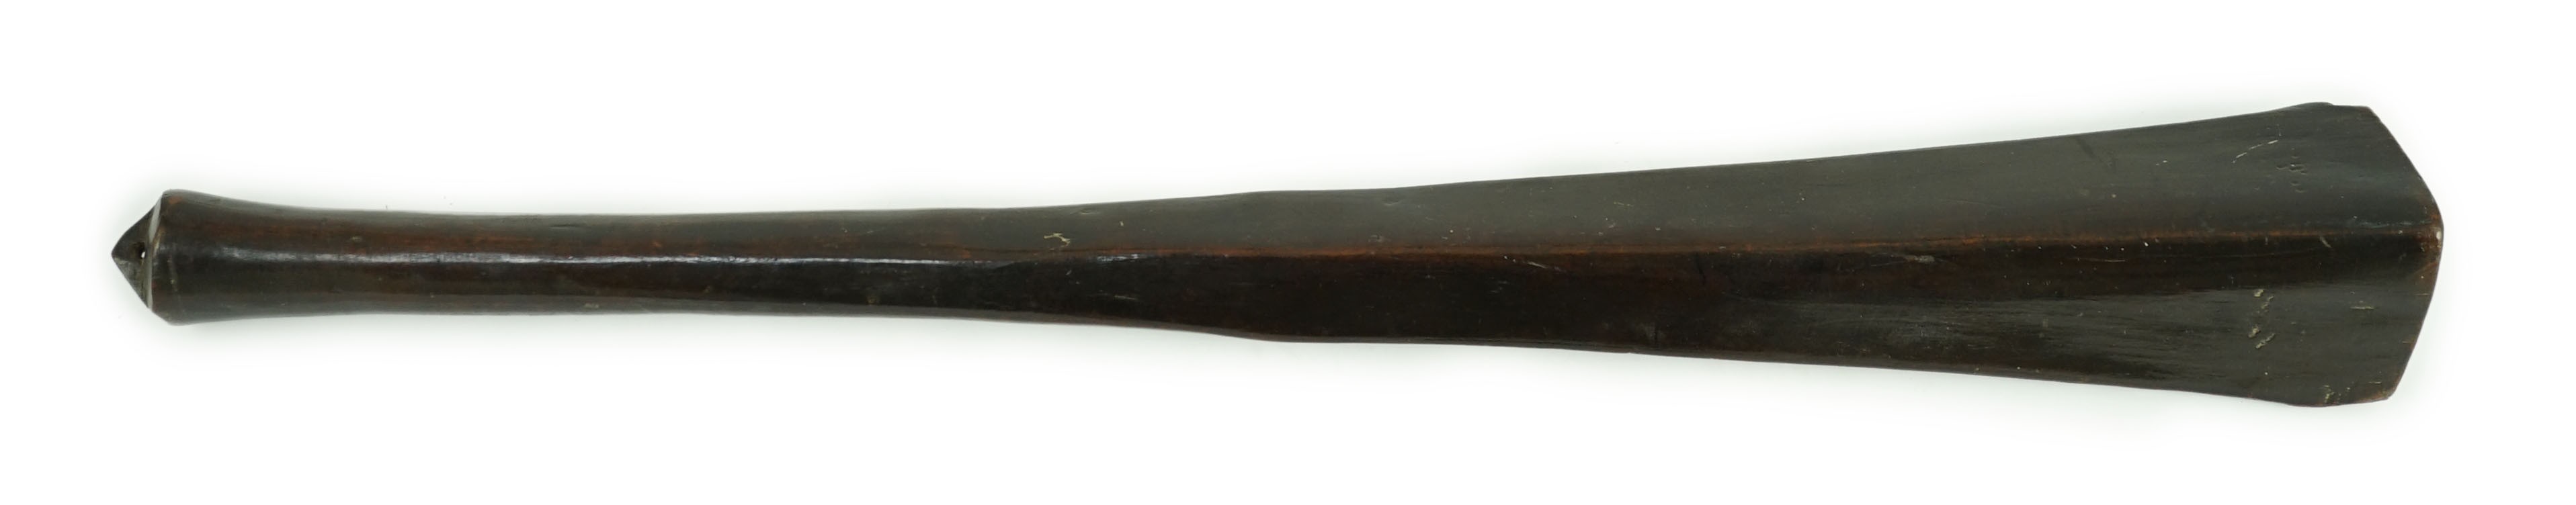 A Bowai Fijian hardwood war club, 65cm long